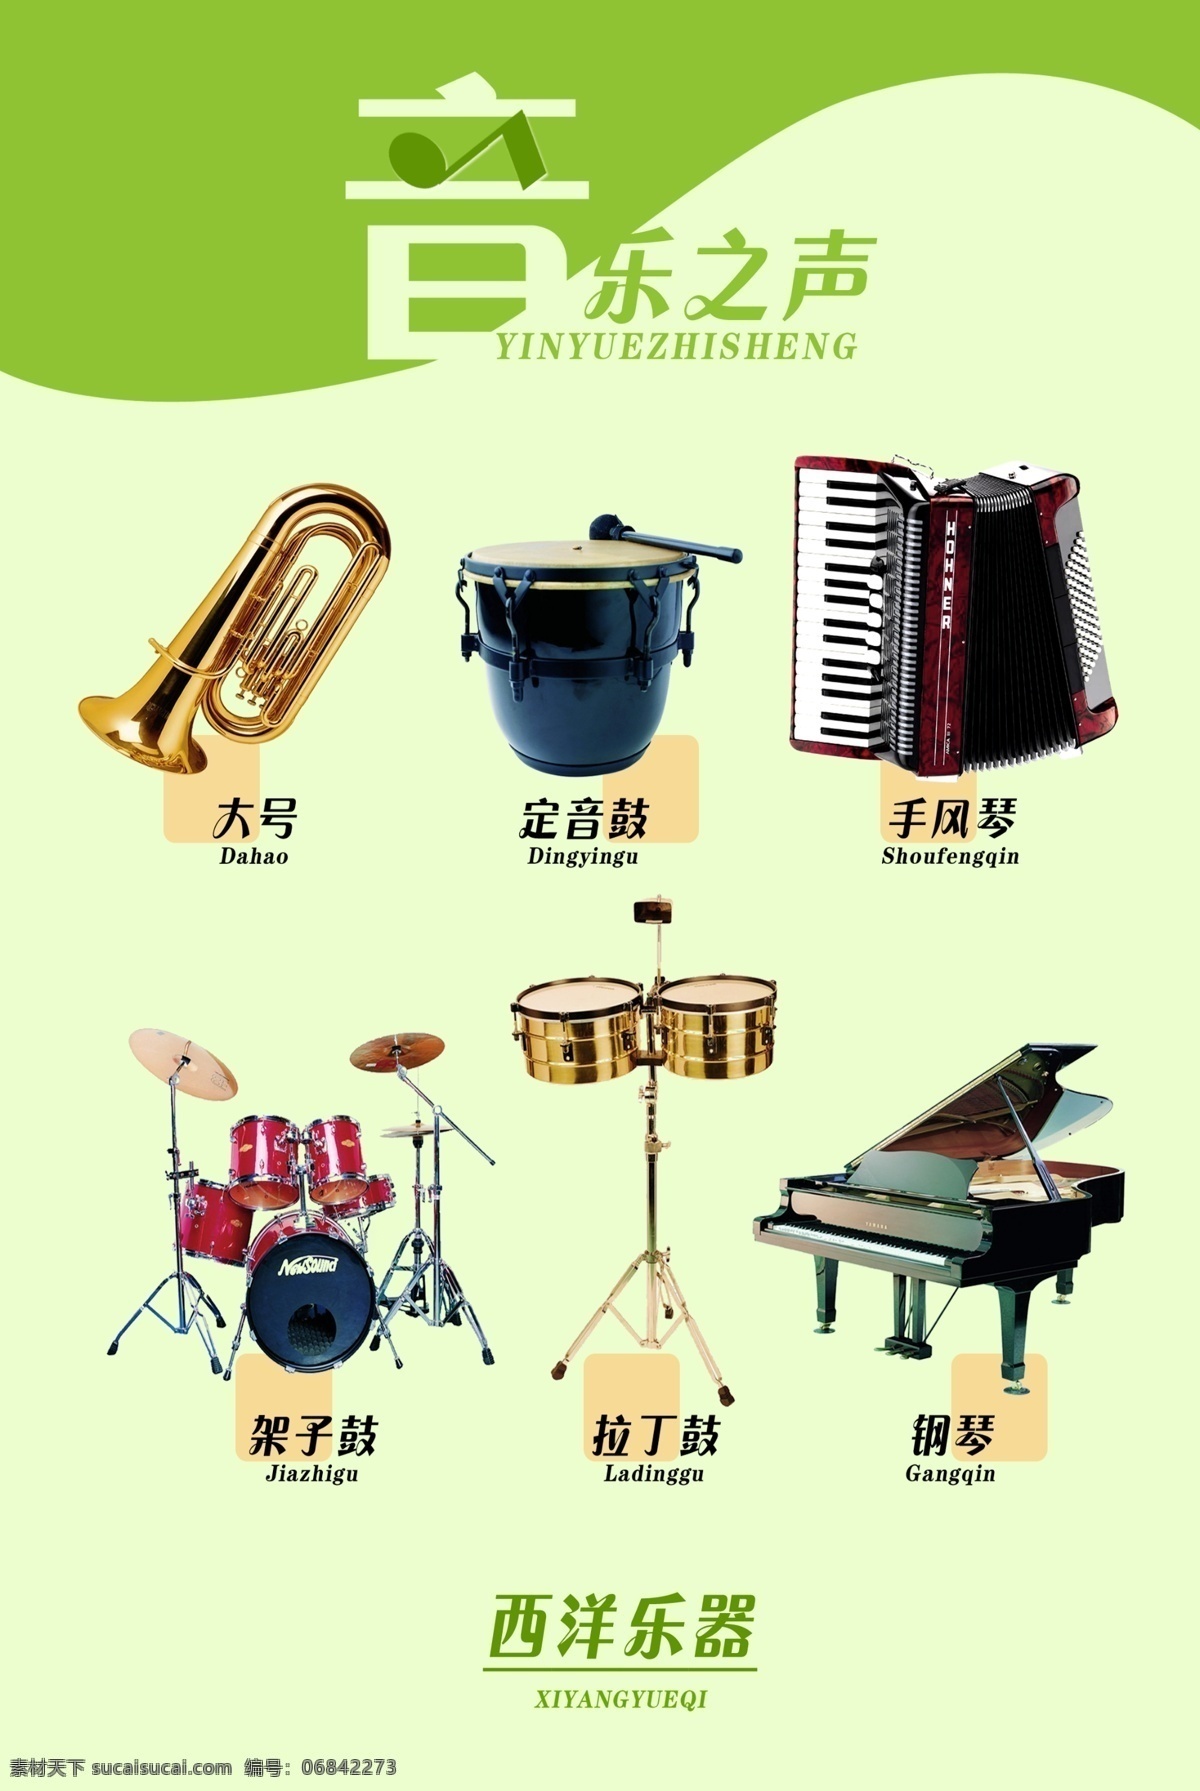 音乐之声 西洋 乐器 西洋乐器介绍 音乐 西洋乐器 音乐海报 多种乐器 民族乐器 绿色 底纹 矢 图 设计图库 dm宣传单 广告设计模板 源文件